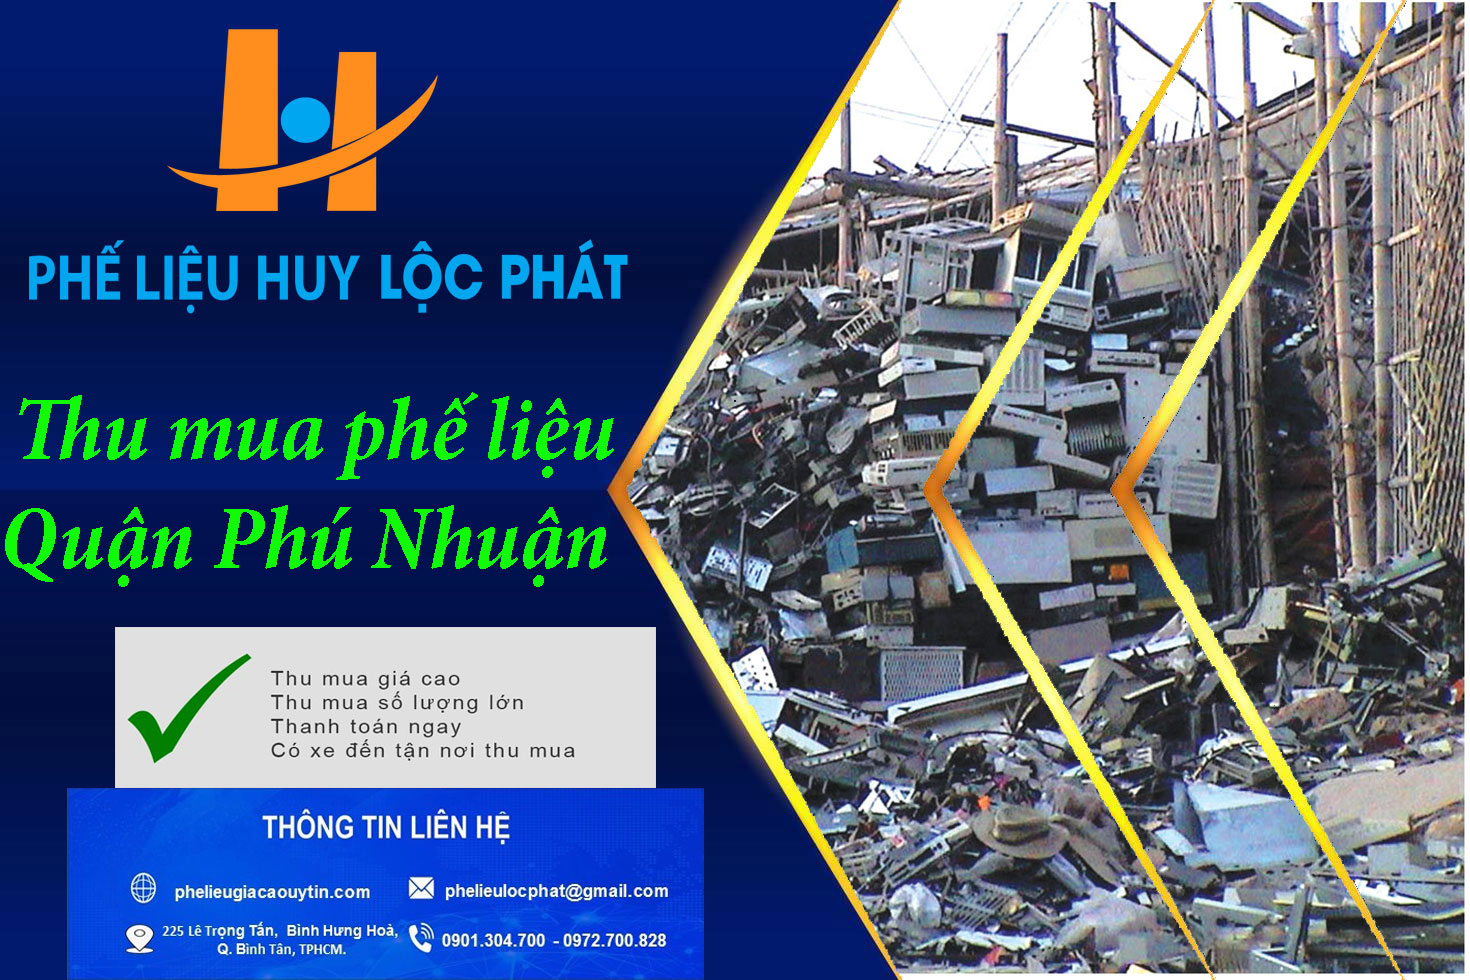 Thu mua phế liệu Quận Phú Nhuận